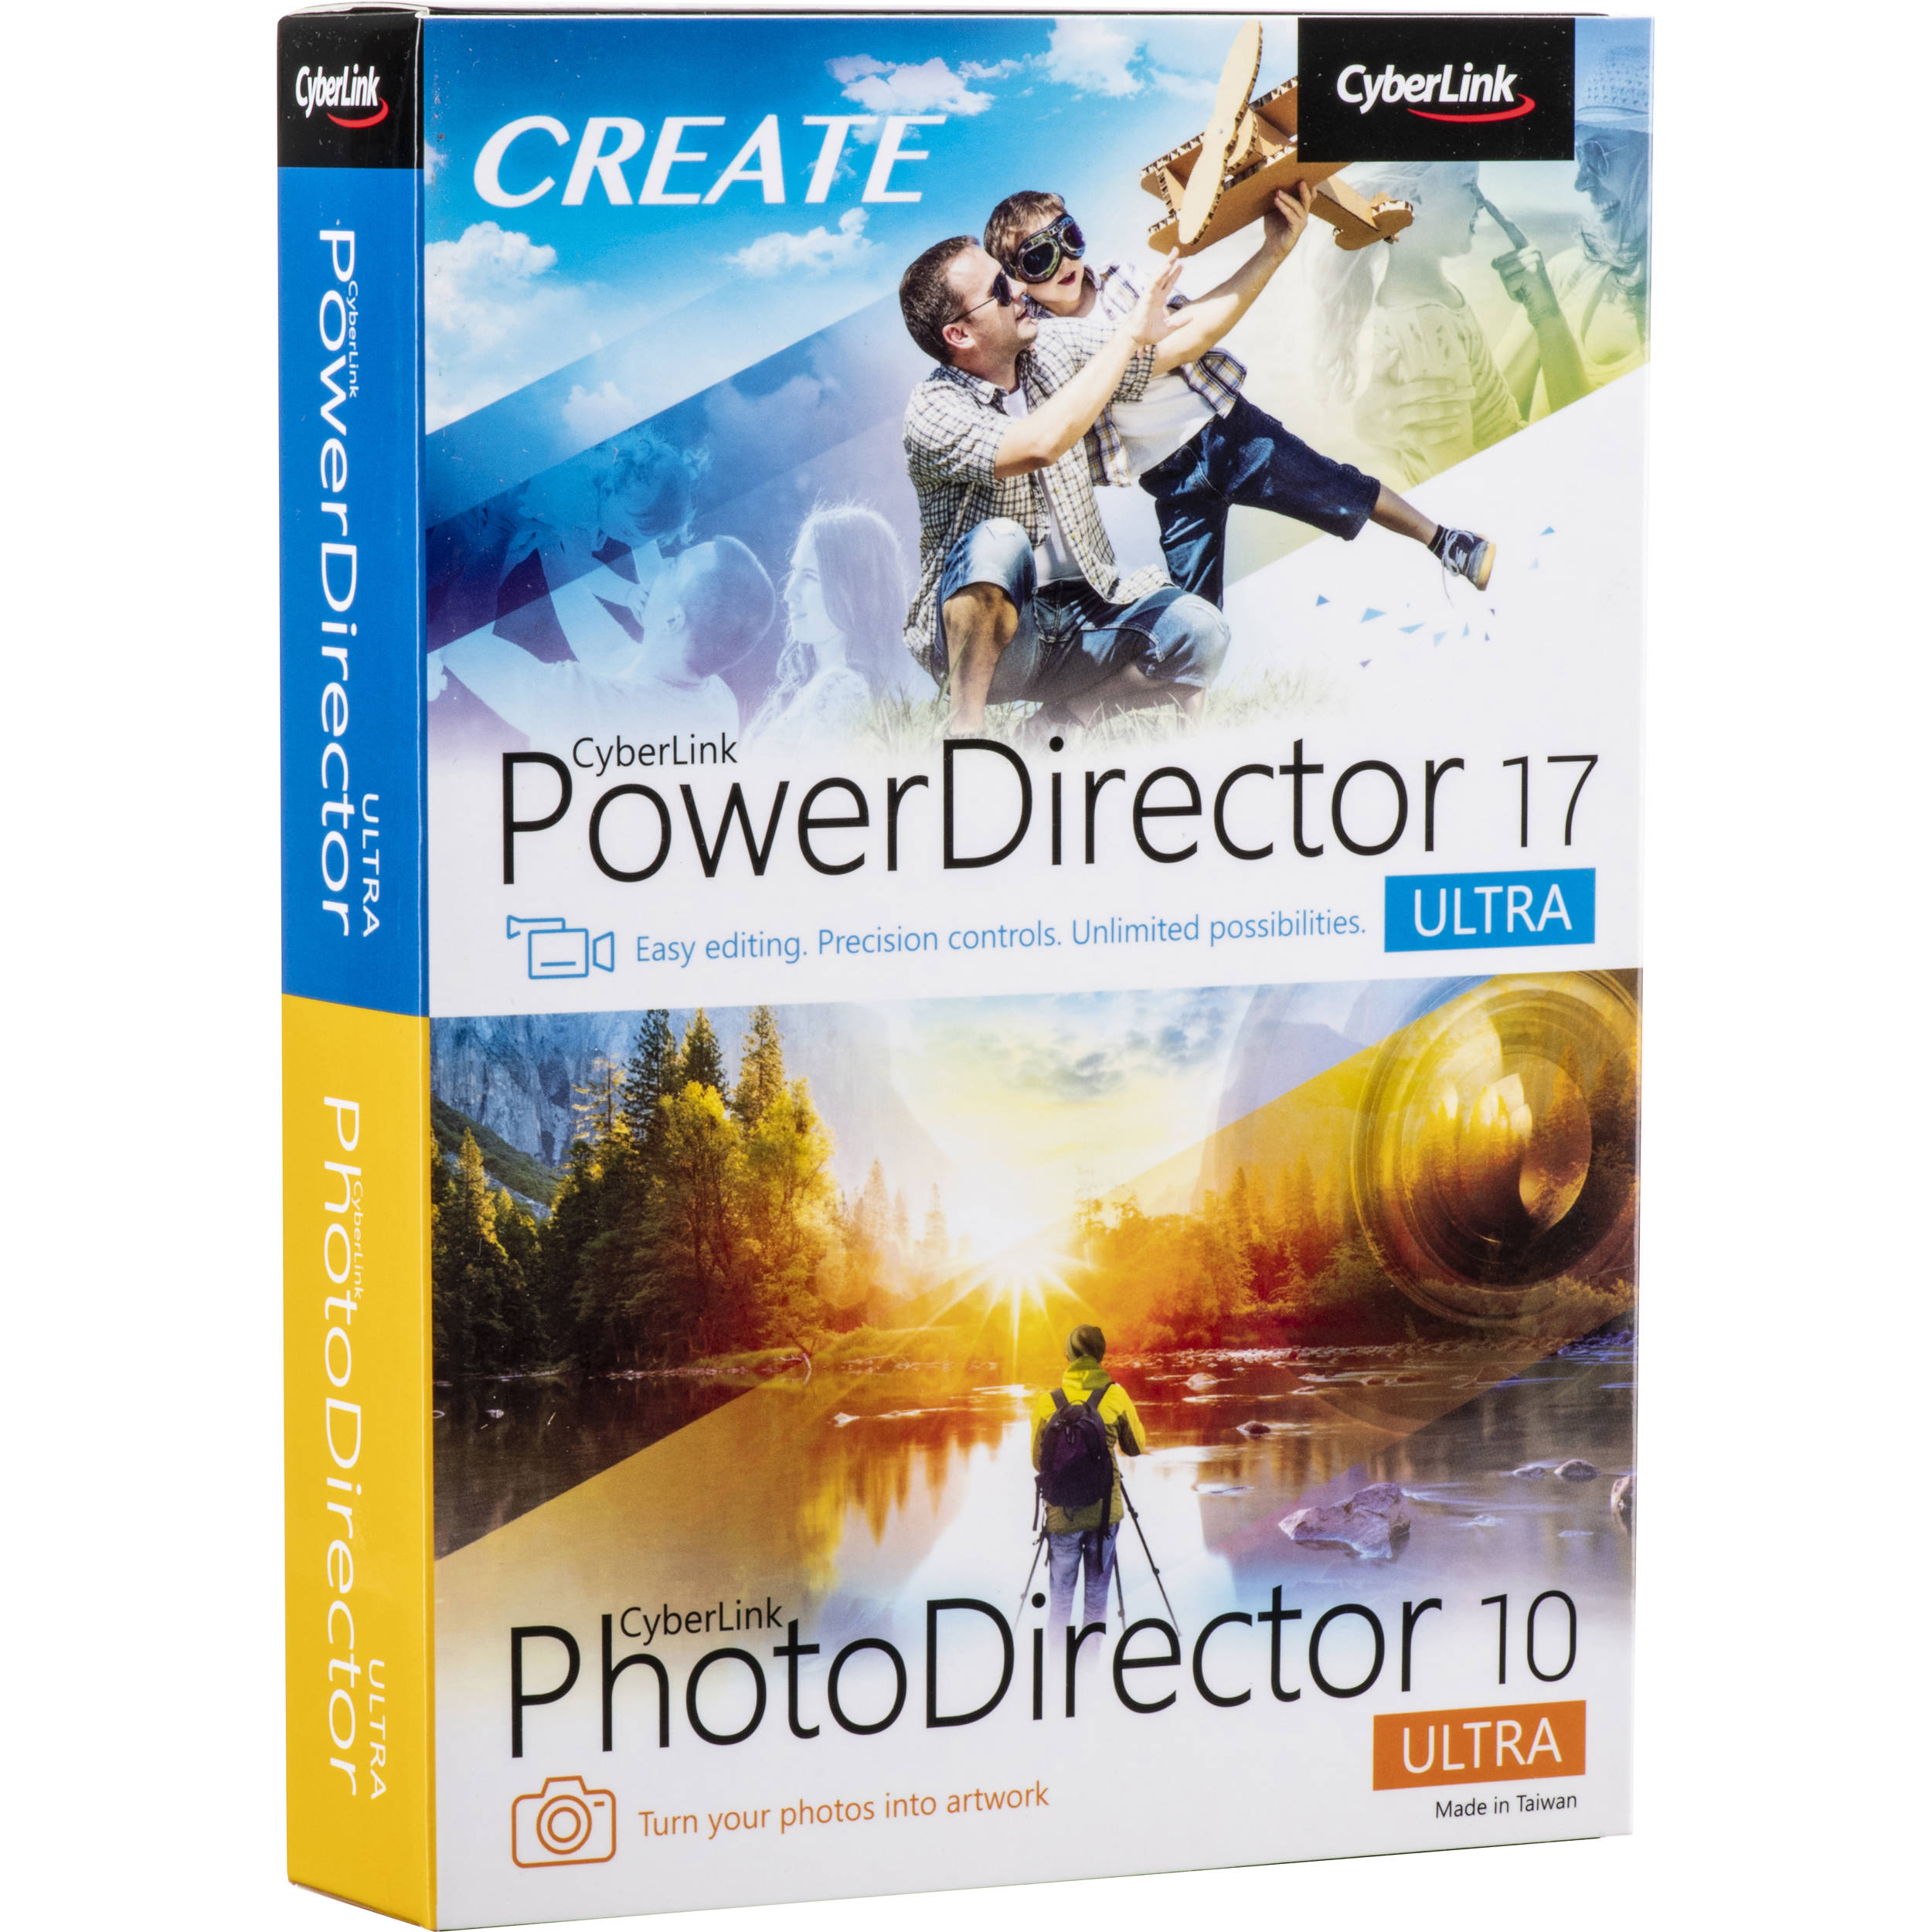 powerdirector 13 content pack premium download